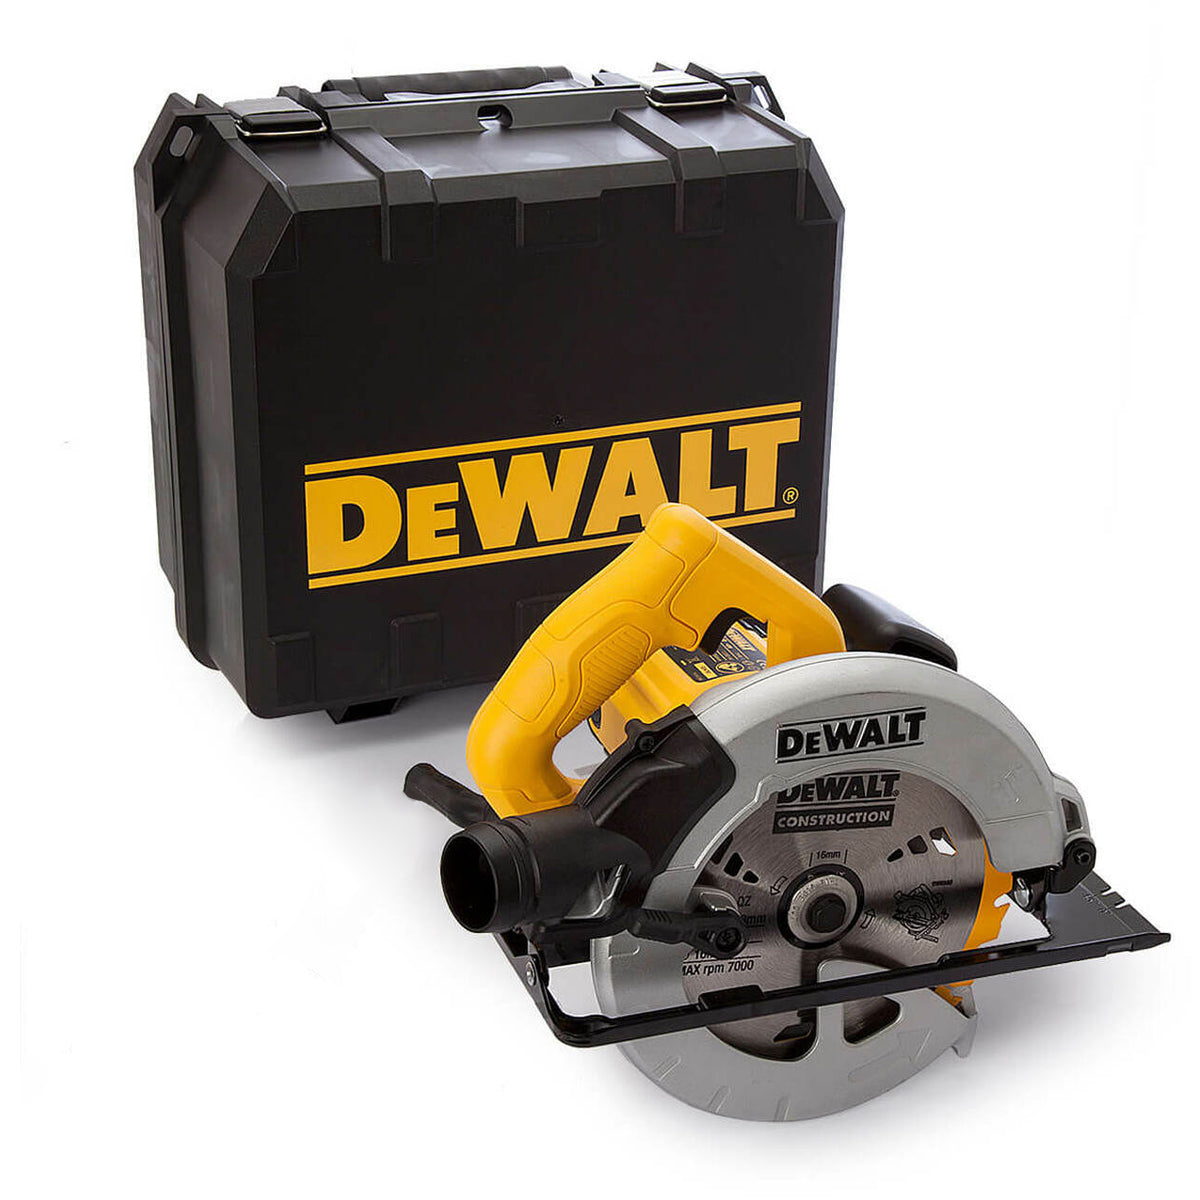 Dewalt DWE560K 184mm Compact Circular Saw In Kitbox 240V